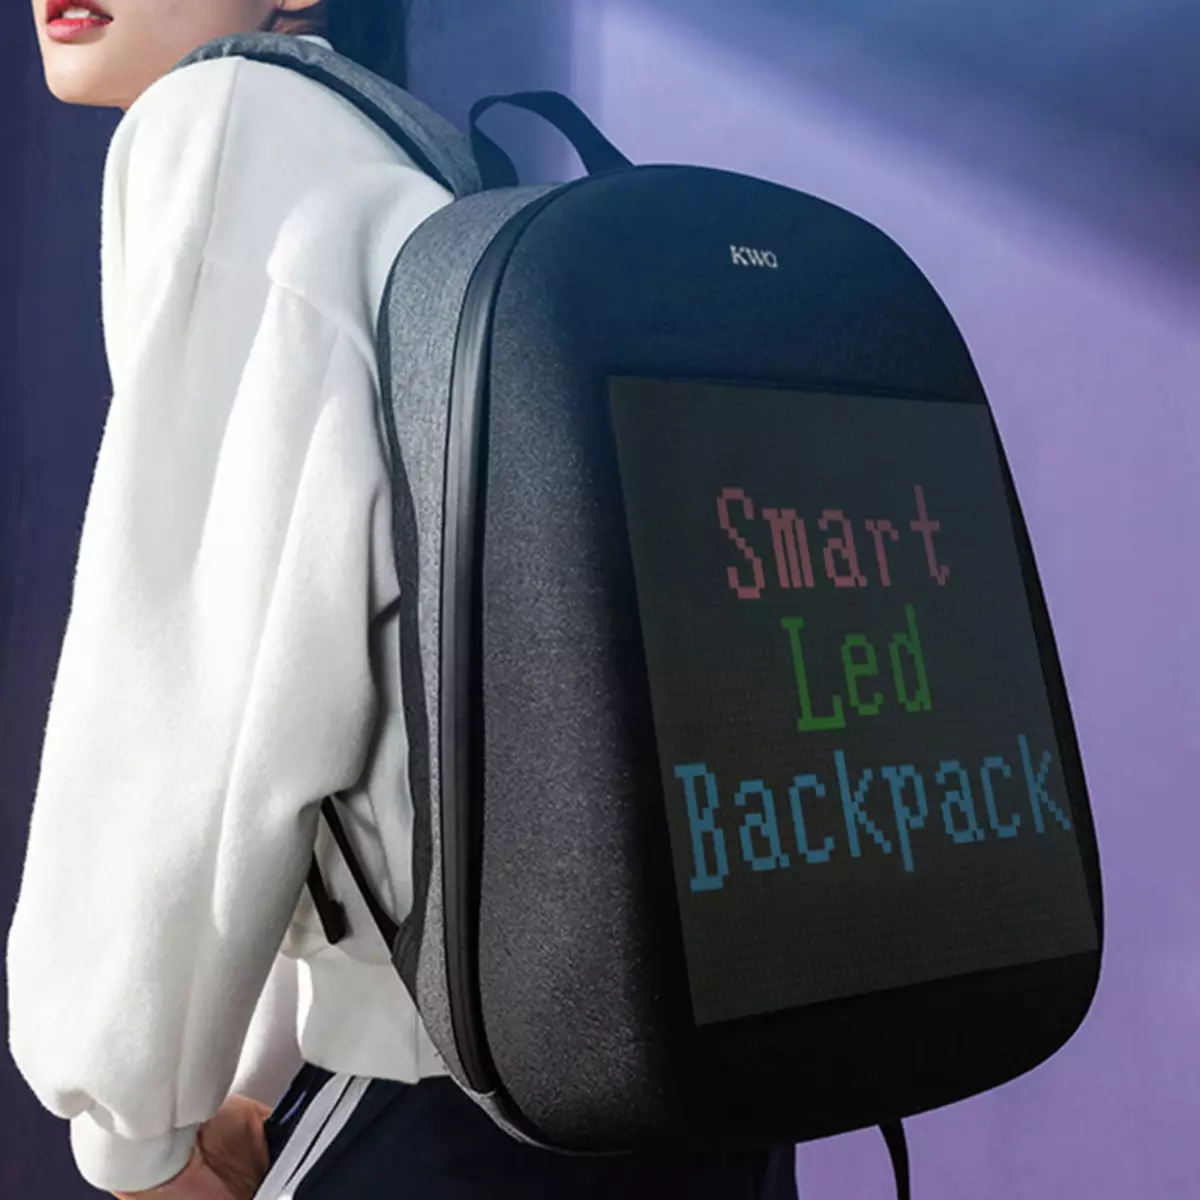 திரை backpacks: பின்னால் இருந்து LED காட்சி ஒளிரும் டிஜிட்டல் backpacks கண்ணோட்டம். 